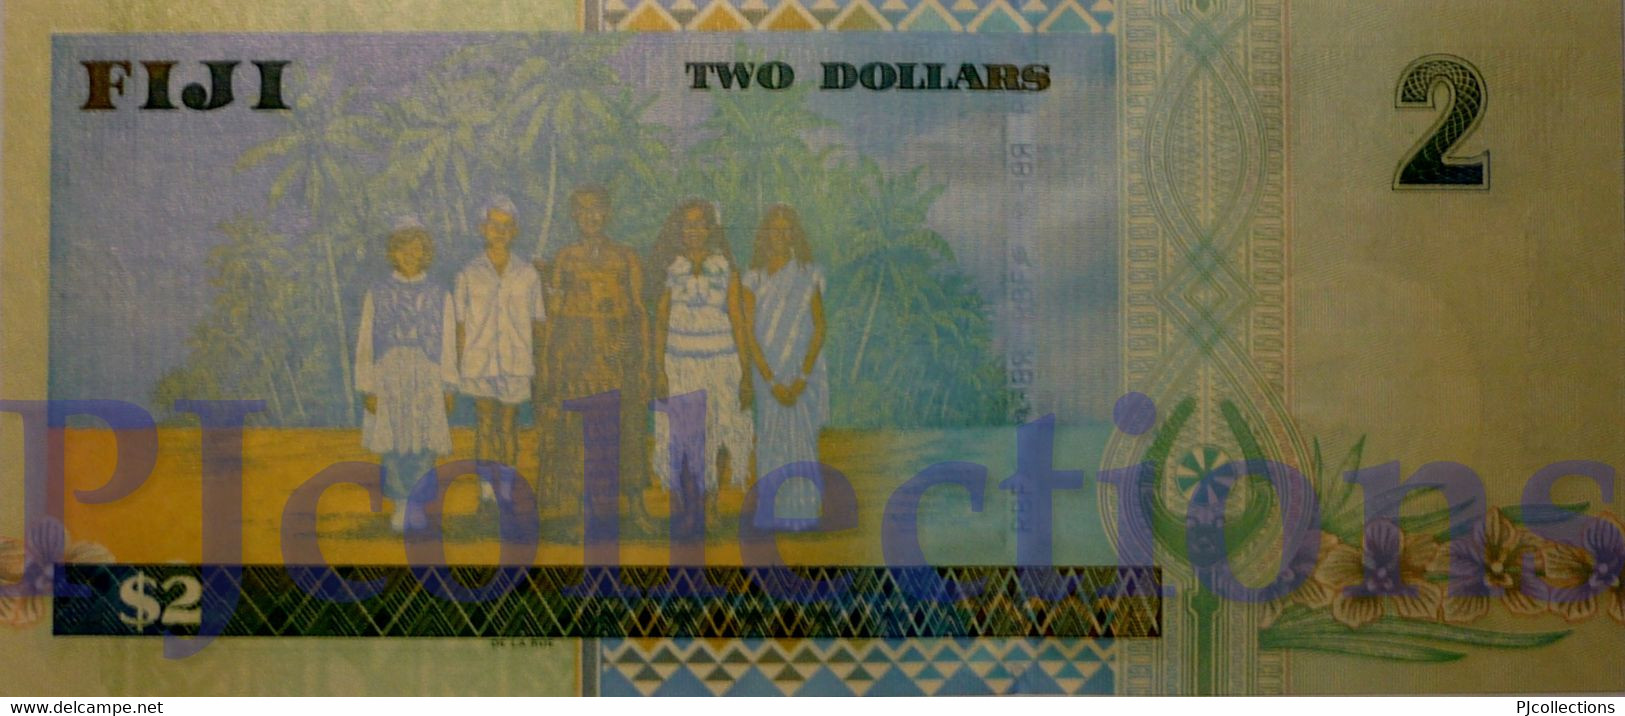 FIJI 2 DOLLARS 2002 PICK 104a UNC - Fidji